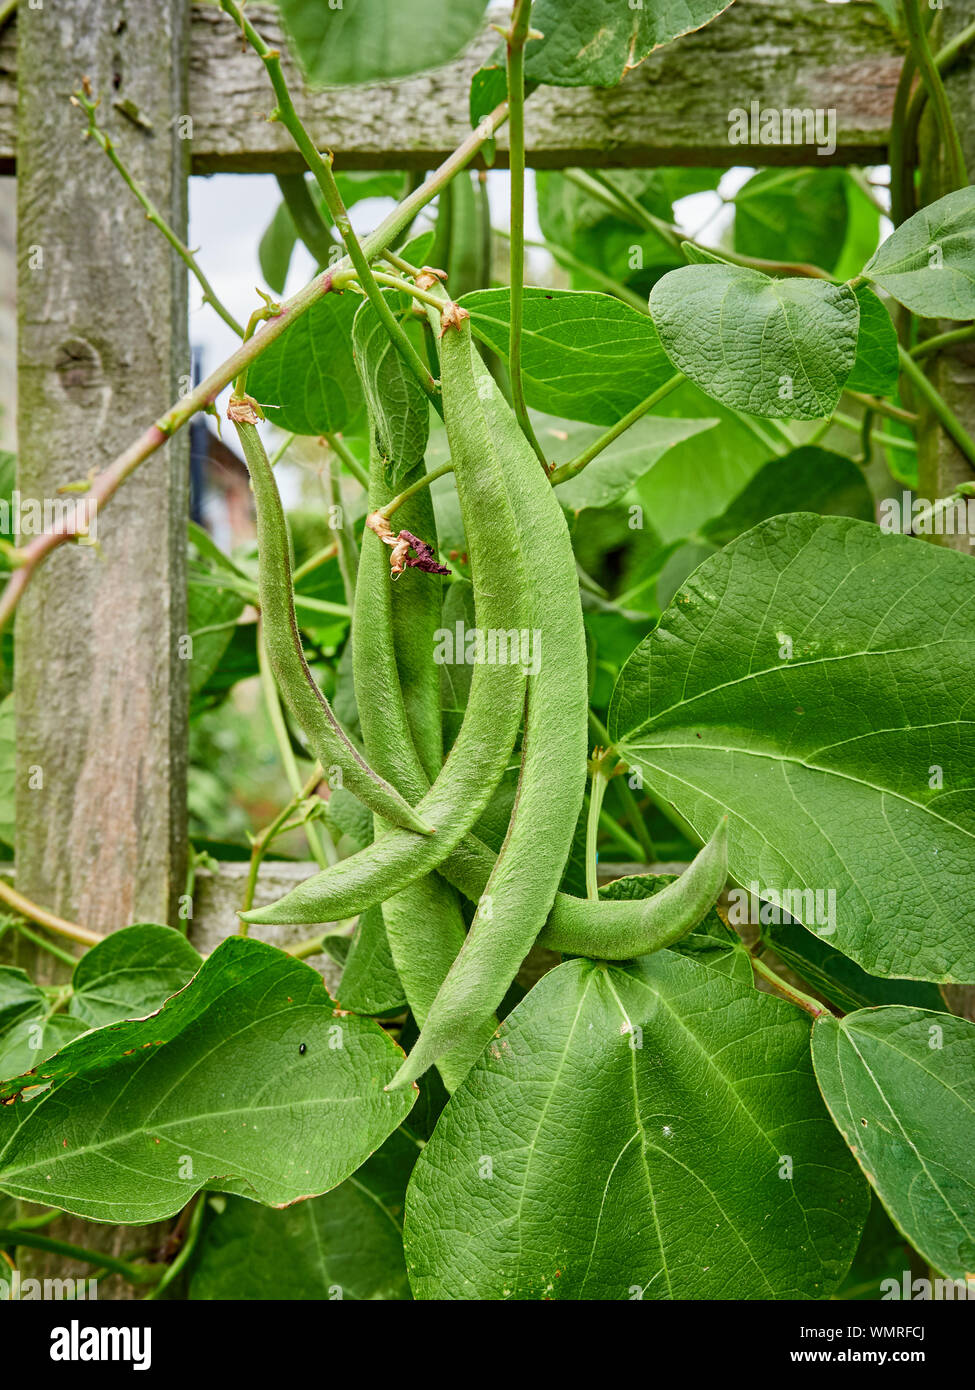 Schnittbohnen, Phaseolus coccineus, Erwachsenwerden Gitter in einem Land  Garten Zuteilung Stockfotografie - Alamy